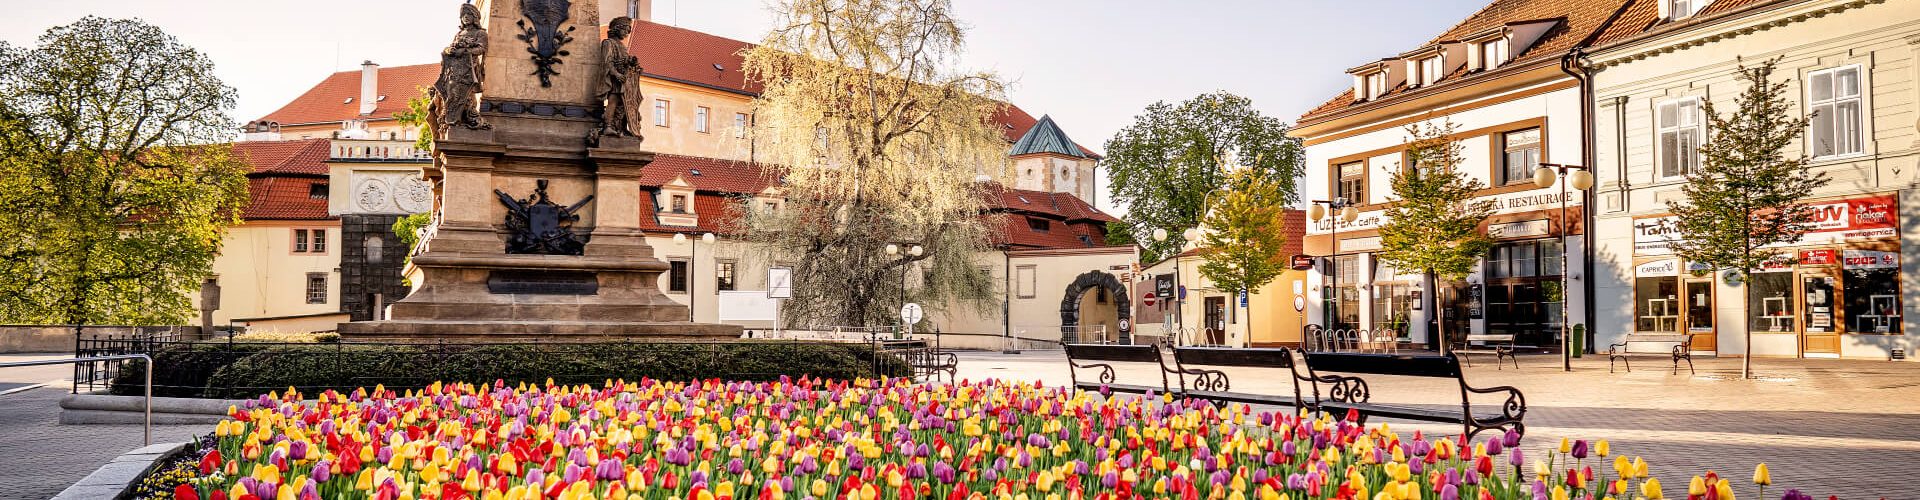 Socha Jiřího z Poděbrad na náměstí a rozkvetlé tulipány